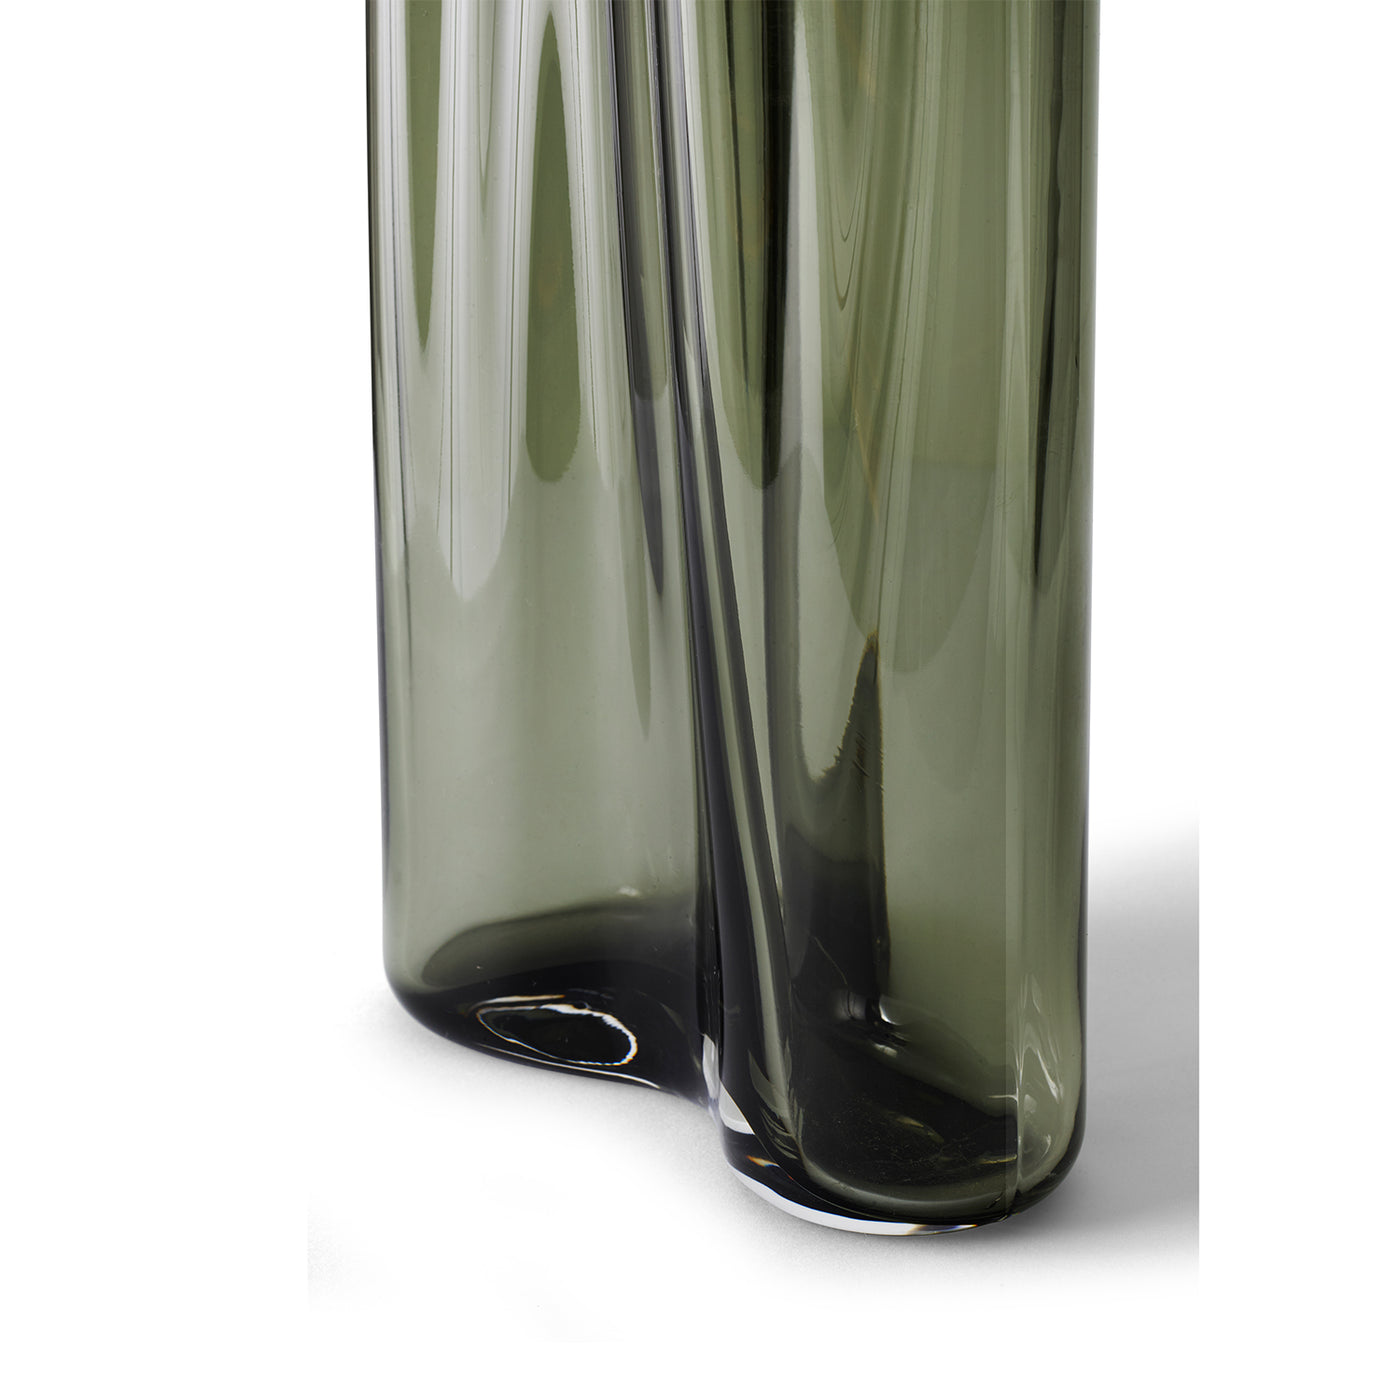 AER skleněná váza